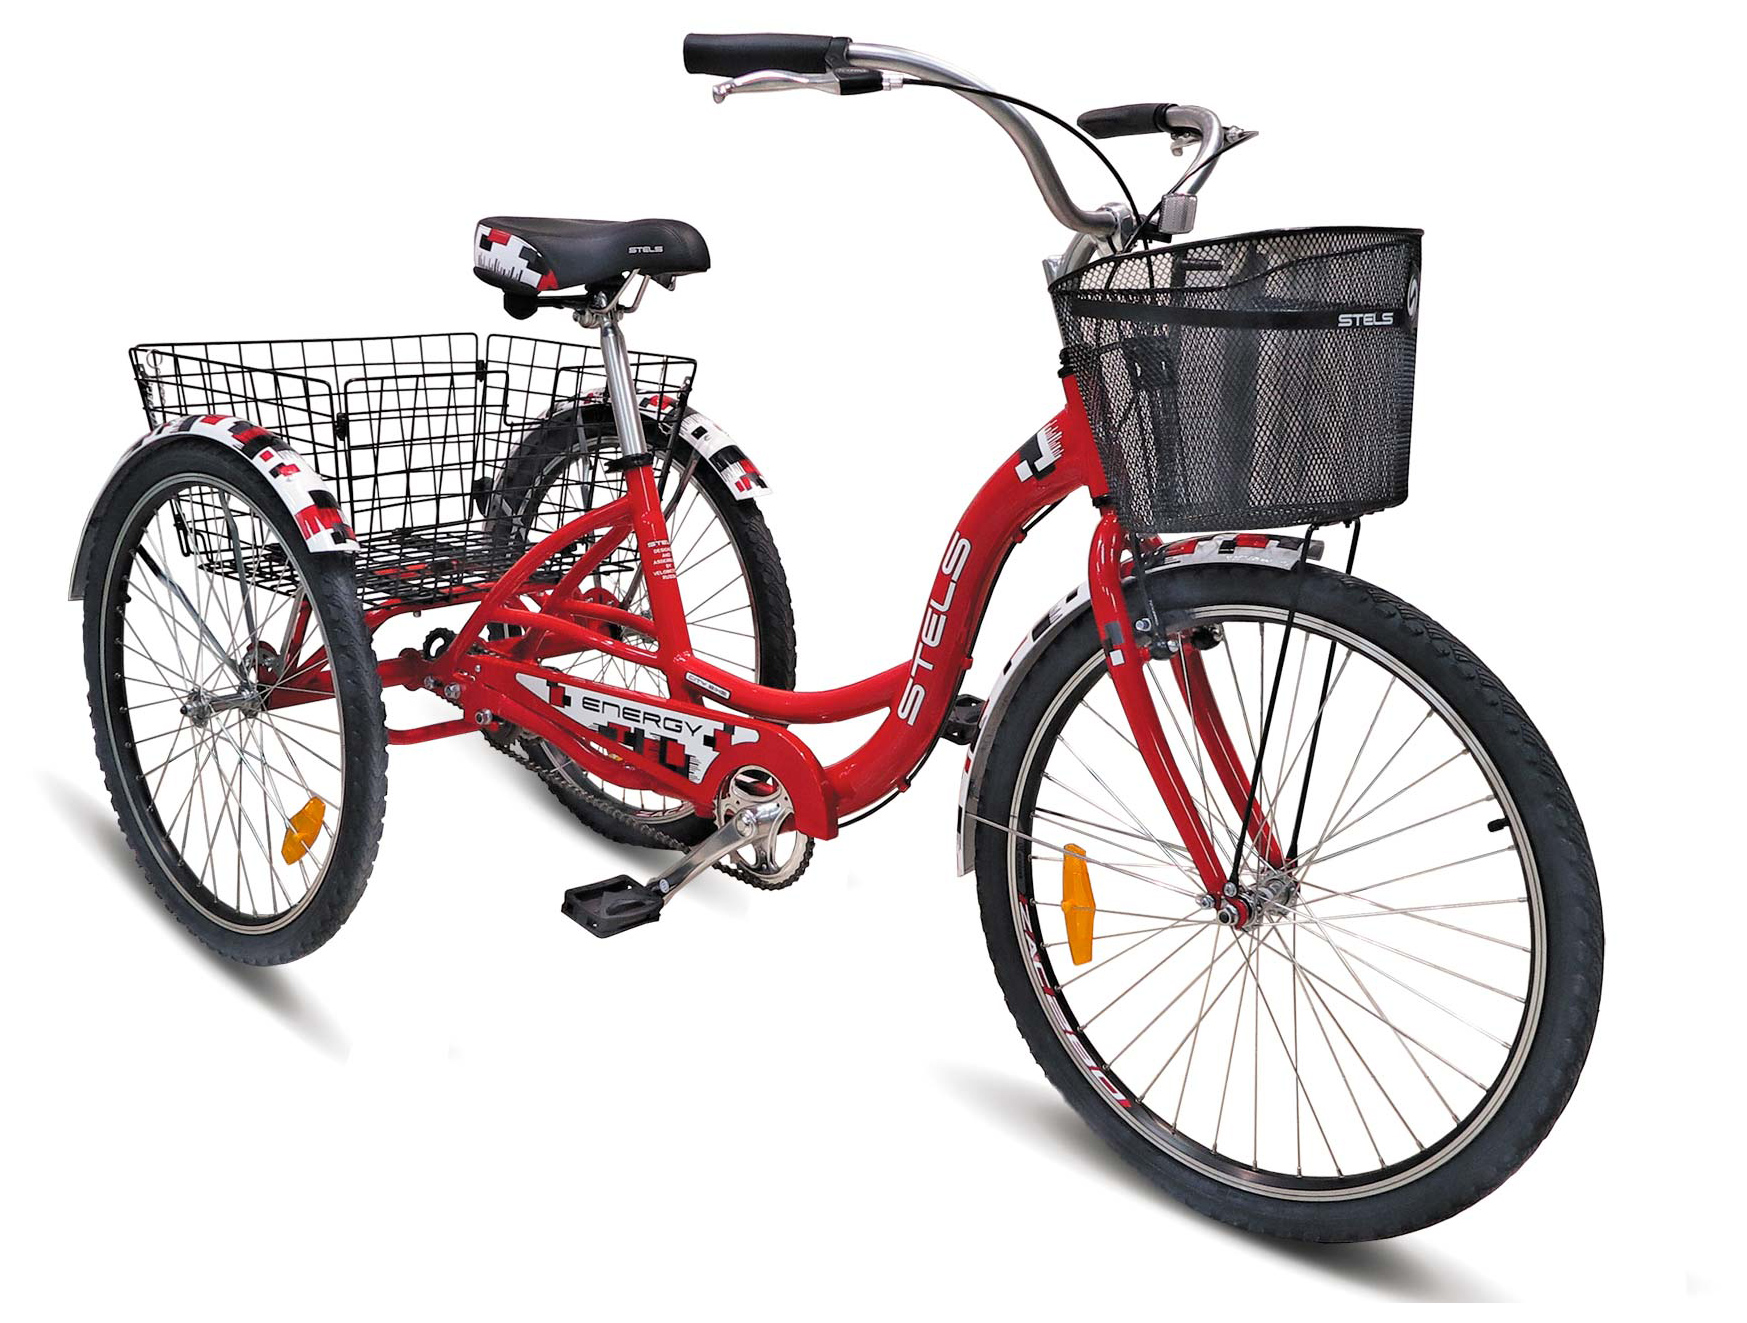  Отзывы о Городском велосипеде Stels Energy I 26 (V020) 2019